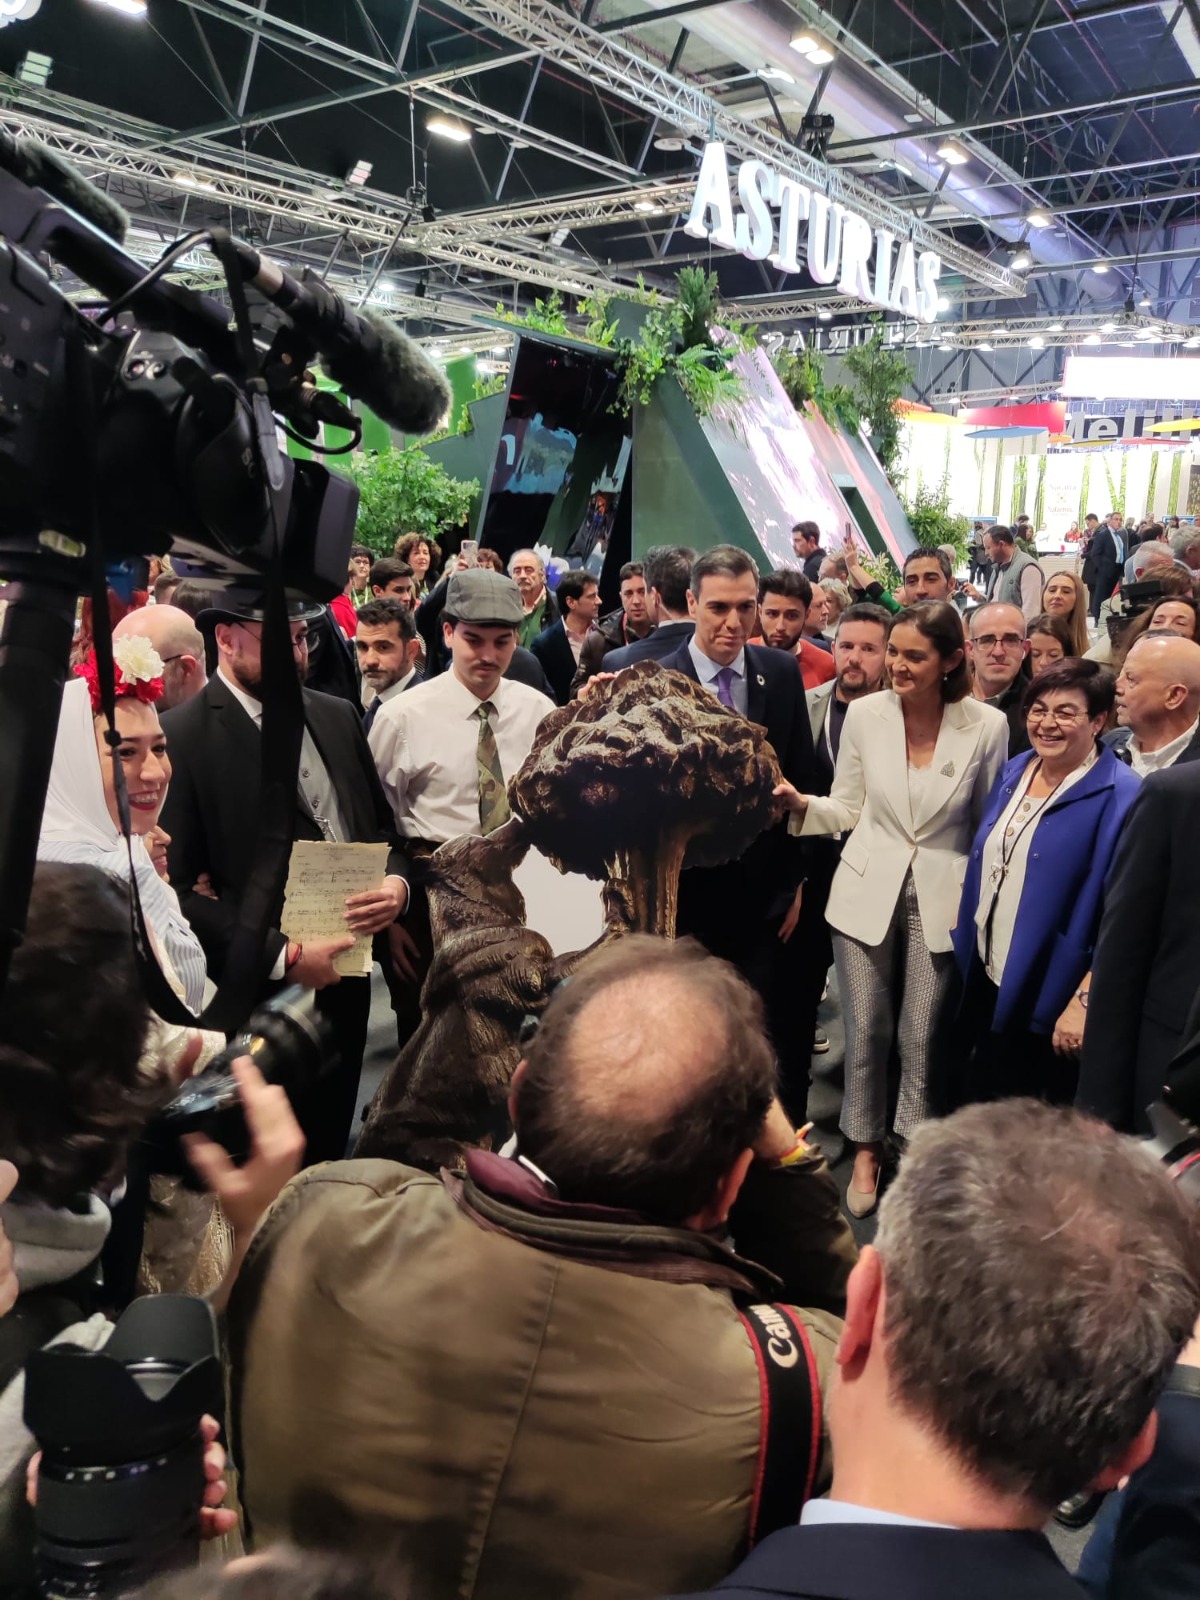 Pedro Sánchez, la ministra de Turismo, el alcalde de Madrid y la presidenta de Madrid, junto a los figurantes de Chapí, Navarro Santafé y la recreación del ‘Oso y el Madroño’ de la campaña turística de Villena